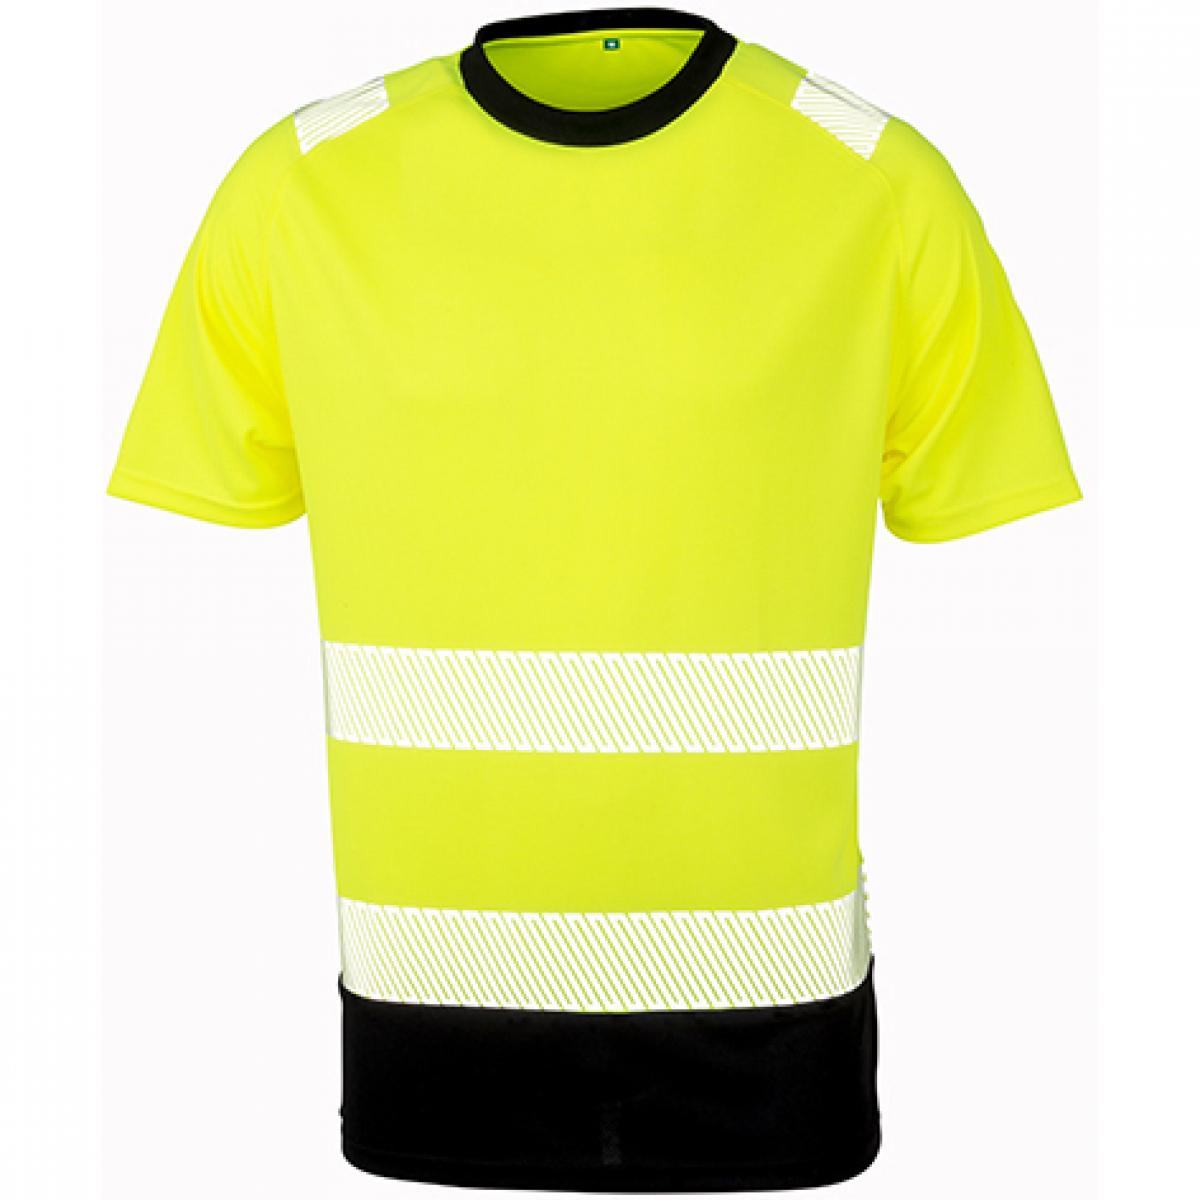 Hersteller: Result Genuine Recycled Herstellernummer: R502X Artikelbezeichnung: Recycled Safety T-Shirt - Sicherheitstshirt - Atmungsaktiv Farbe: Fluorescent Orange/Black